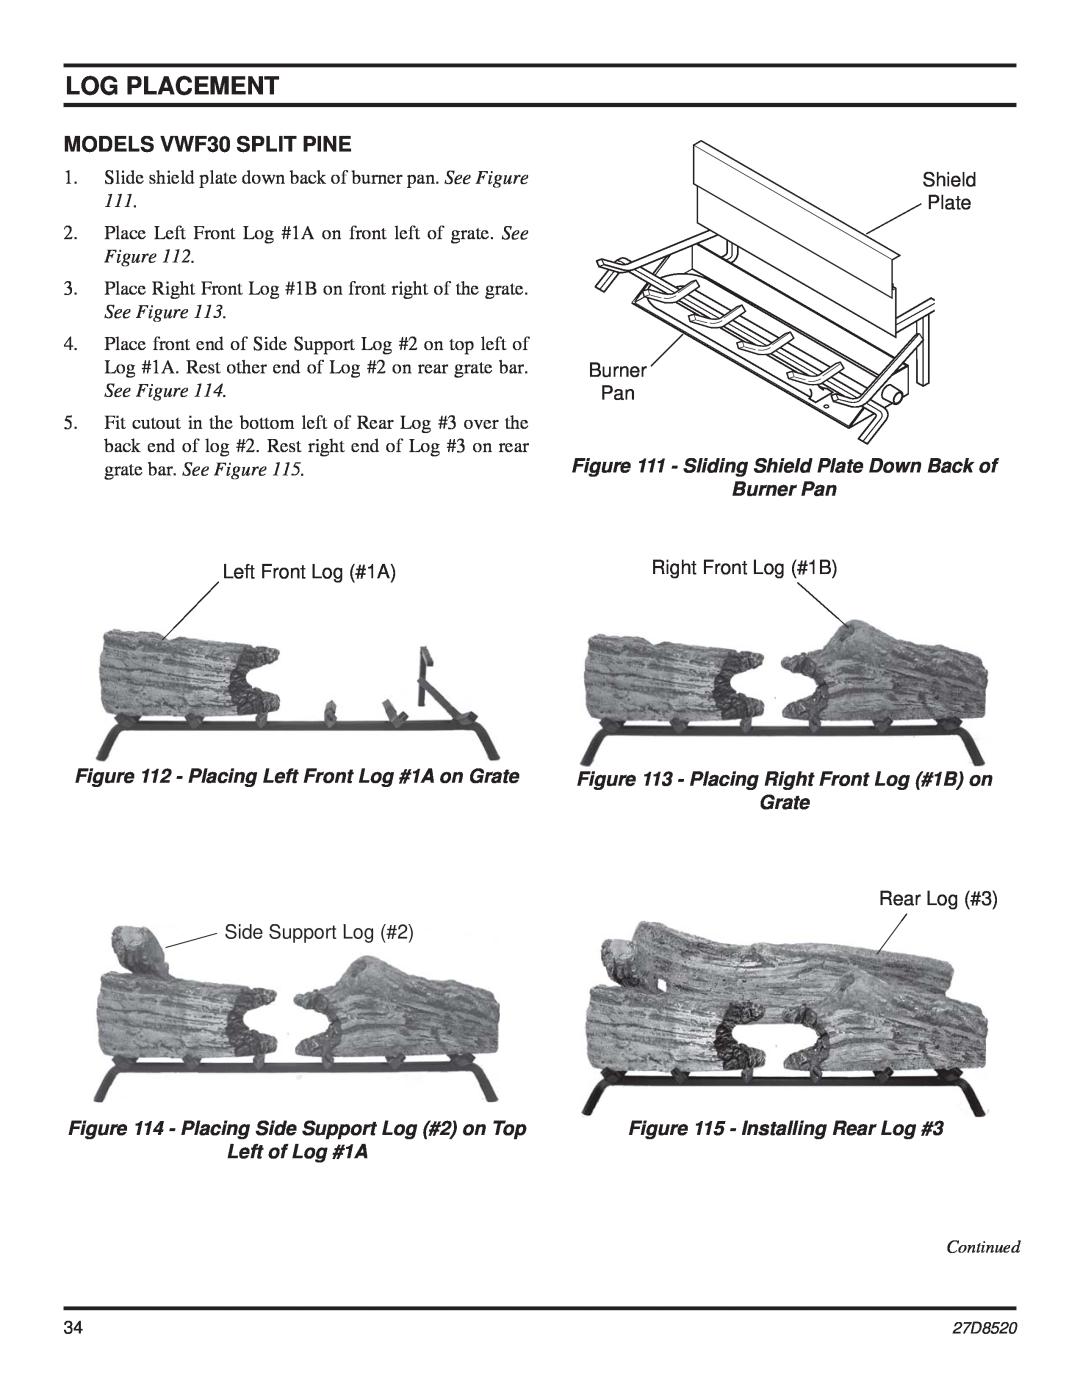 Monessen Hearth VWF36 manual MODELS VWF30 SPLIT PINE, Log Placement, Placing Left Front Log #1A on Grate, Burner Pan 